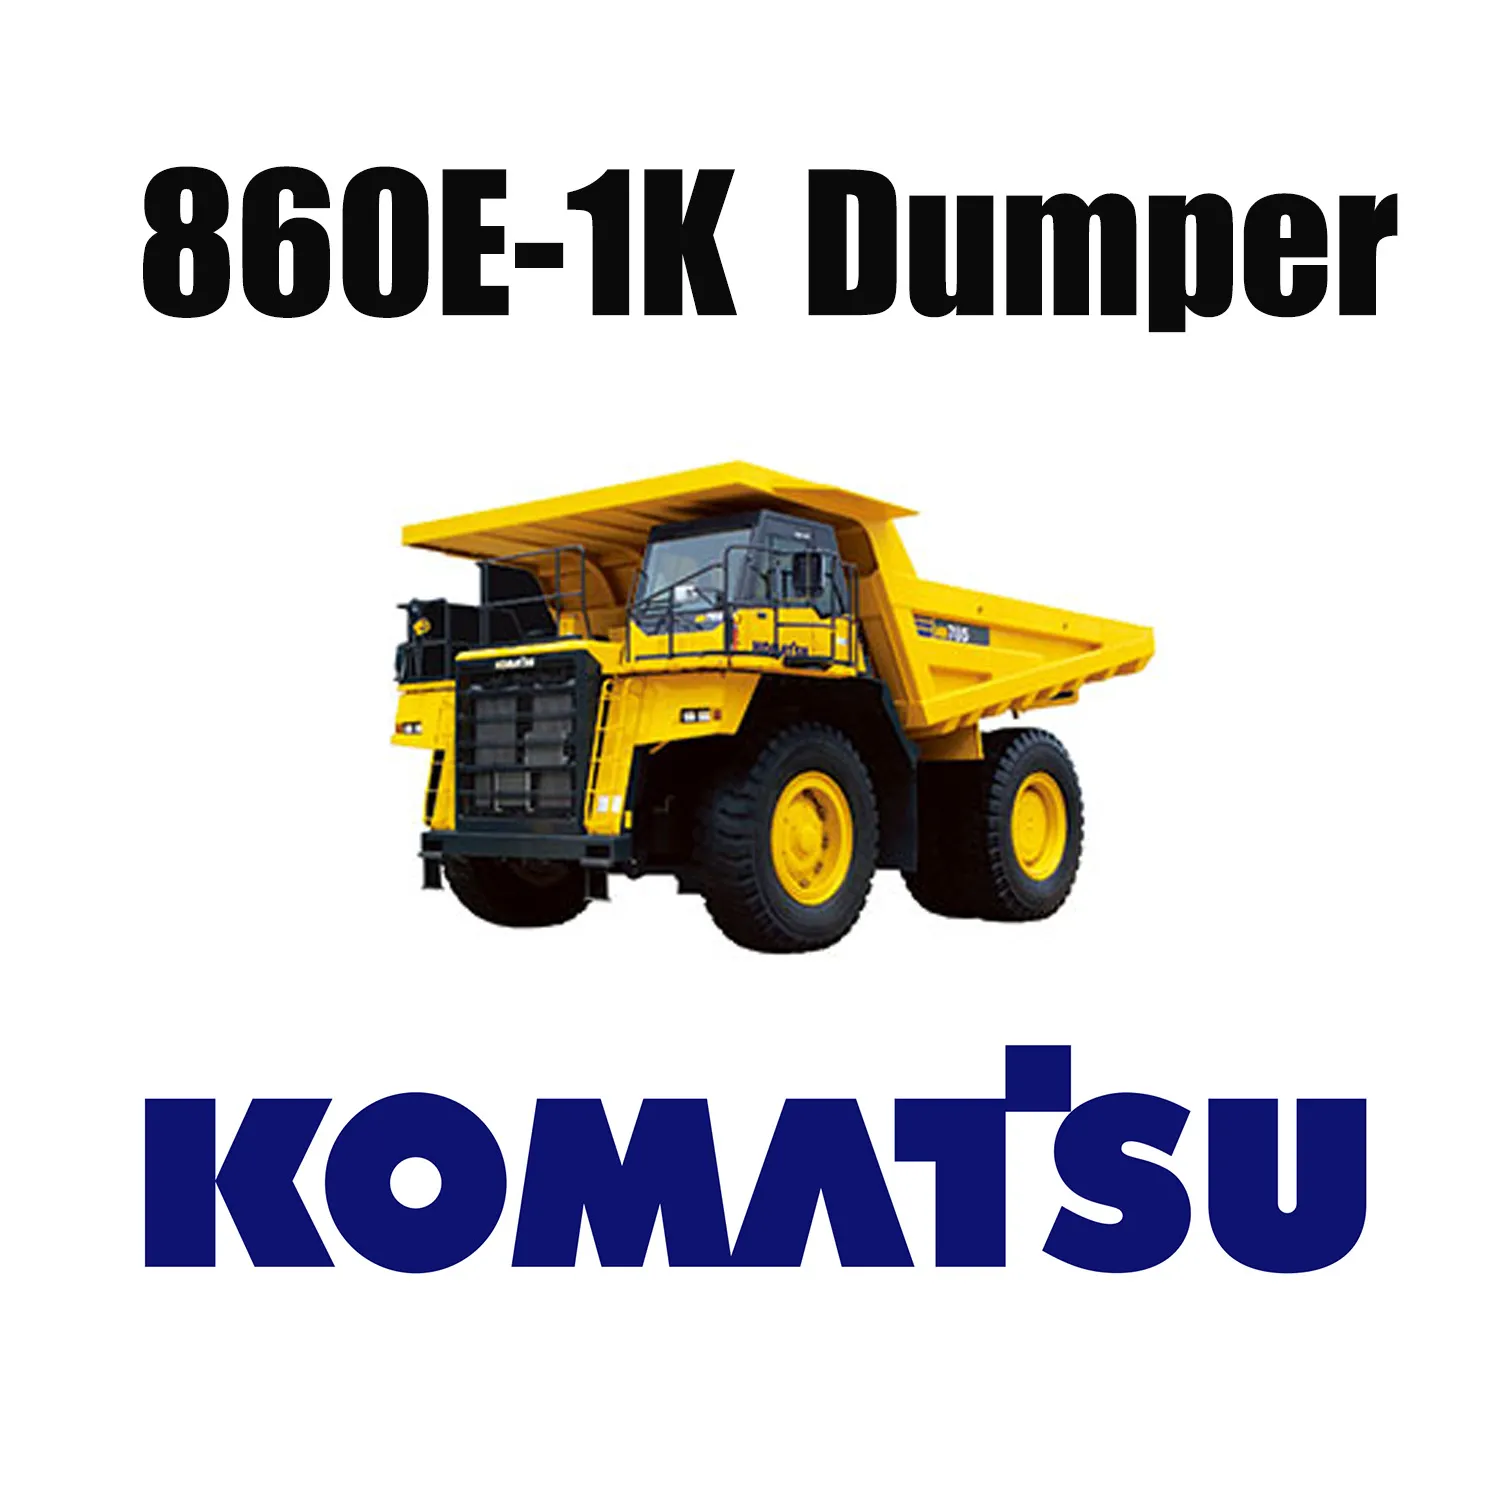 Pneumatici fuoristrada Giant 50/80R57 utilizzati nella miniera di carbone per KOMATSU 860E-1K